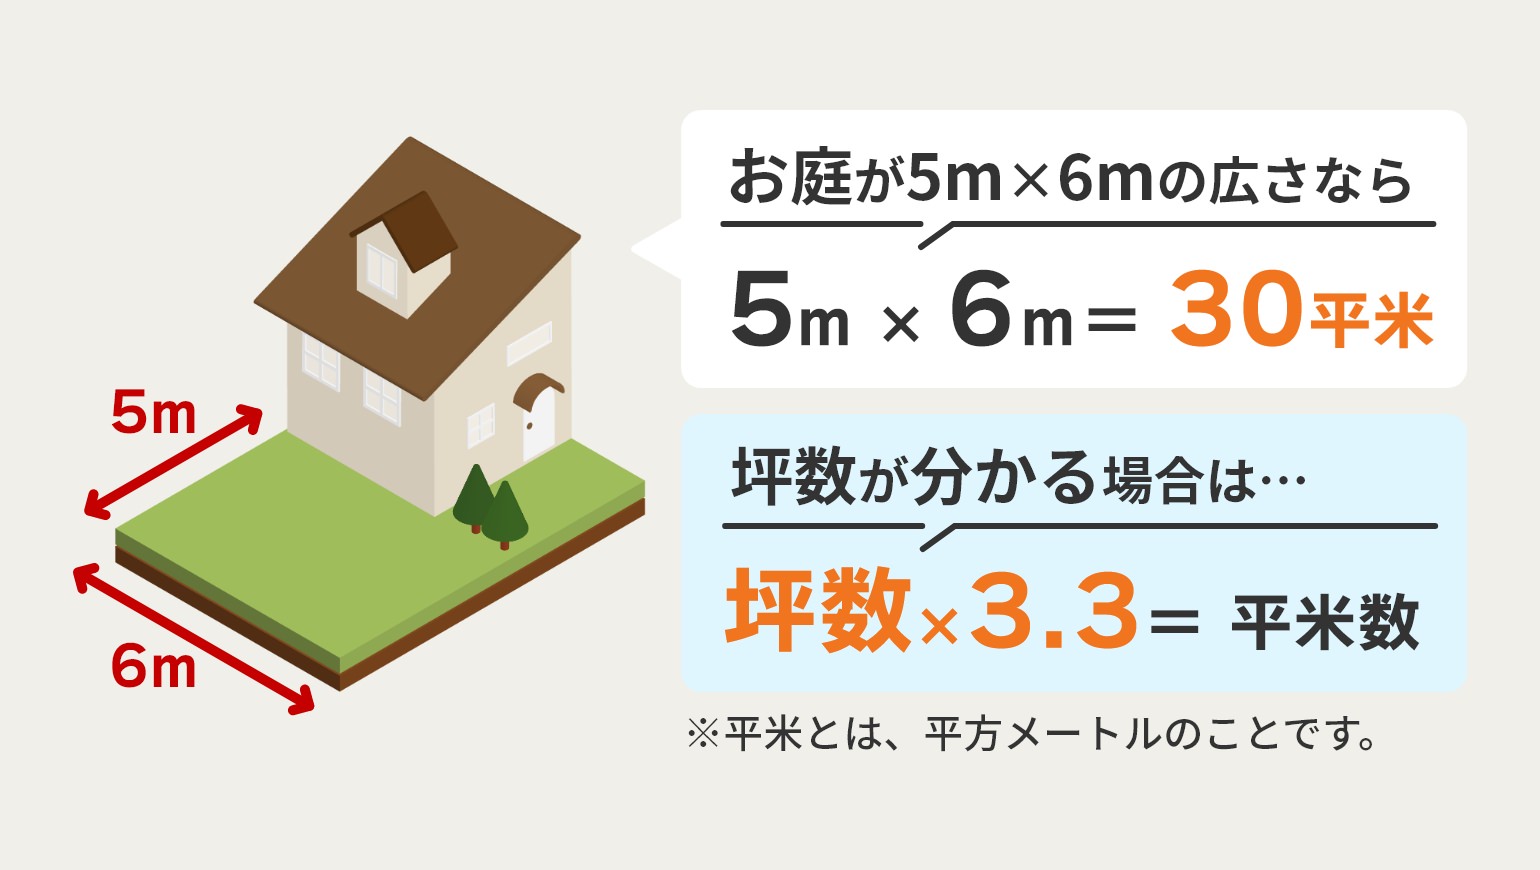 お庭が5m×6mの広さなら5m×6m＝30平米、坪数が分かる場合は…坪数×3.3＝平米数※平米とは、平方メートルのことです。